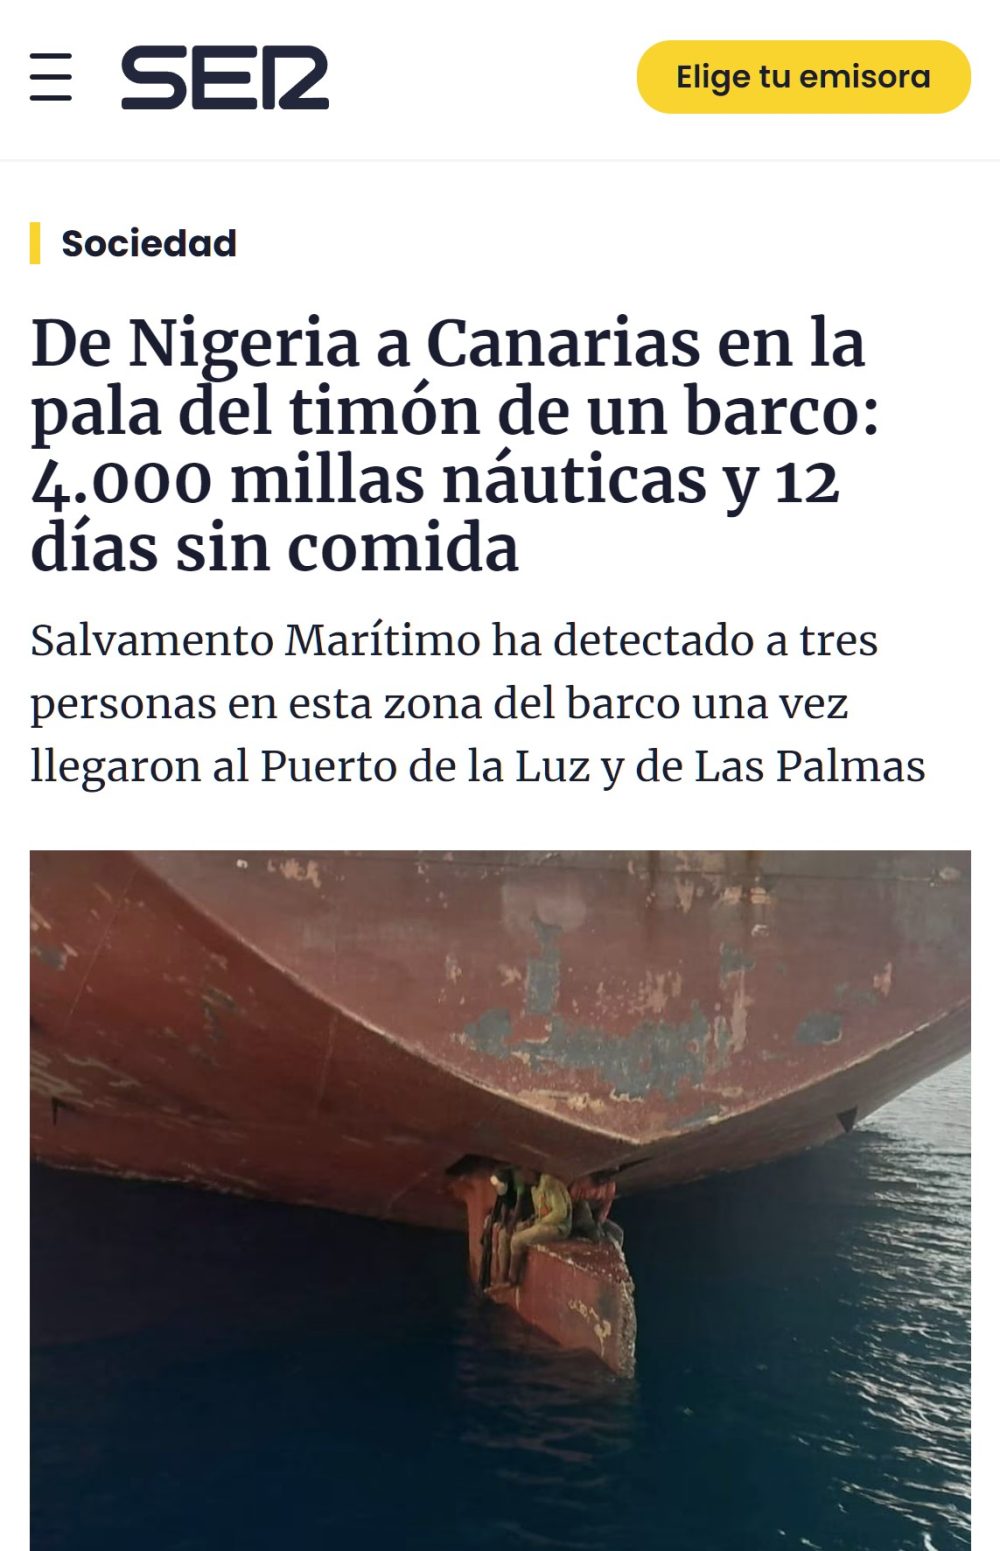 Cuatro nigerianos viajan hasta Brasil escondidos en el timón de un buque creyendo que iba a Europa.